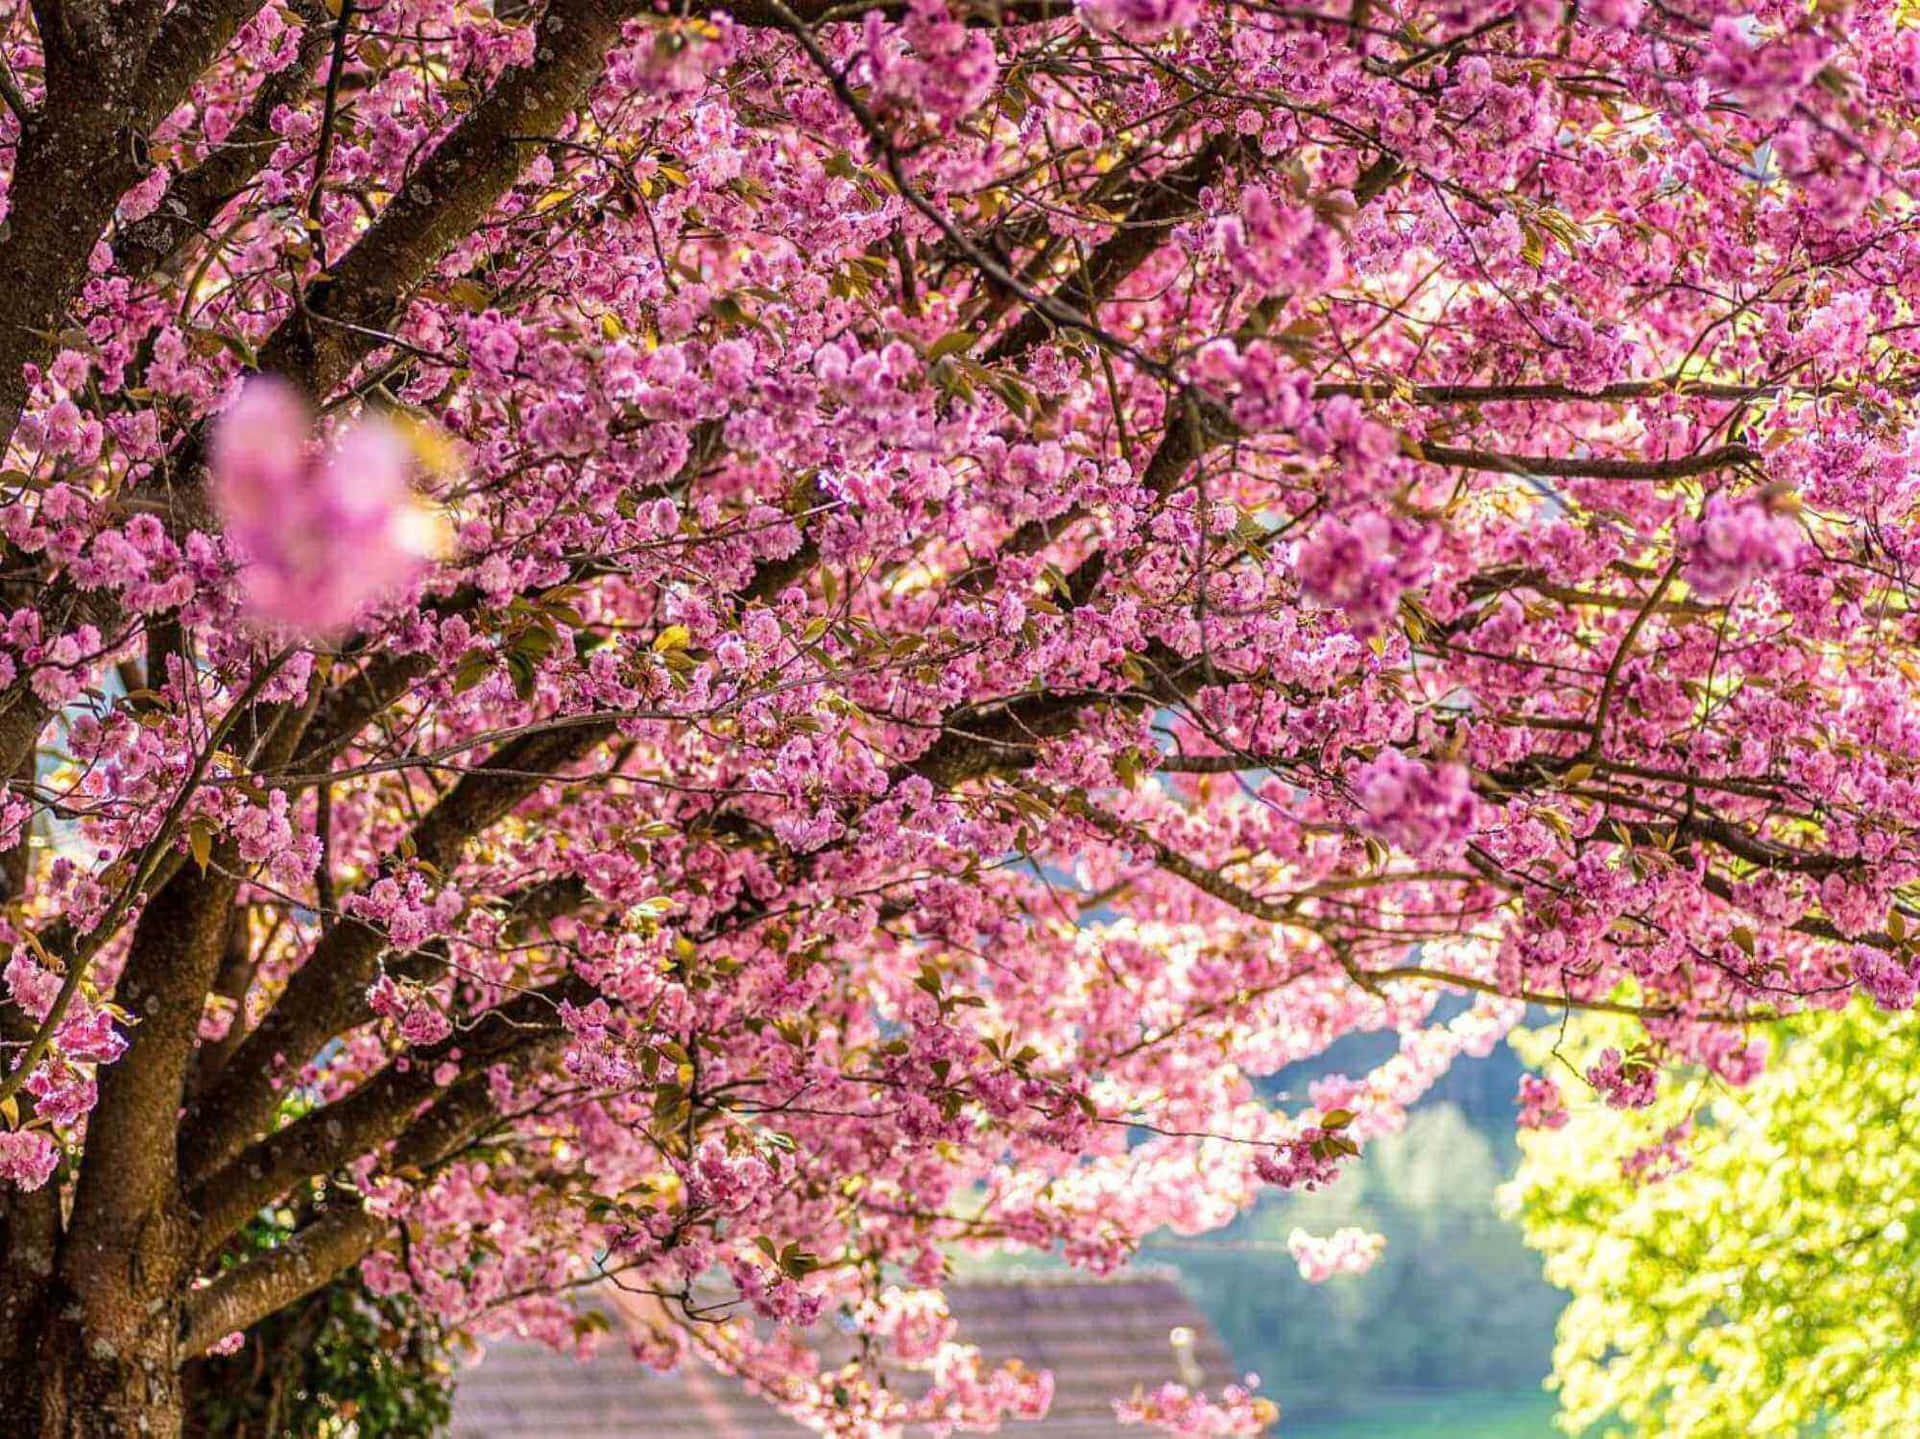 Cherry Blossom Trees in Full Bloom